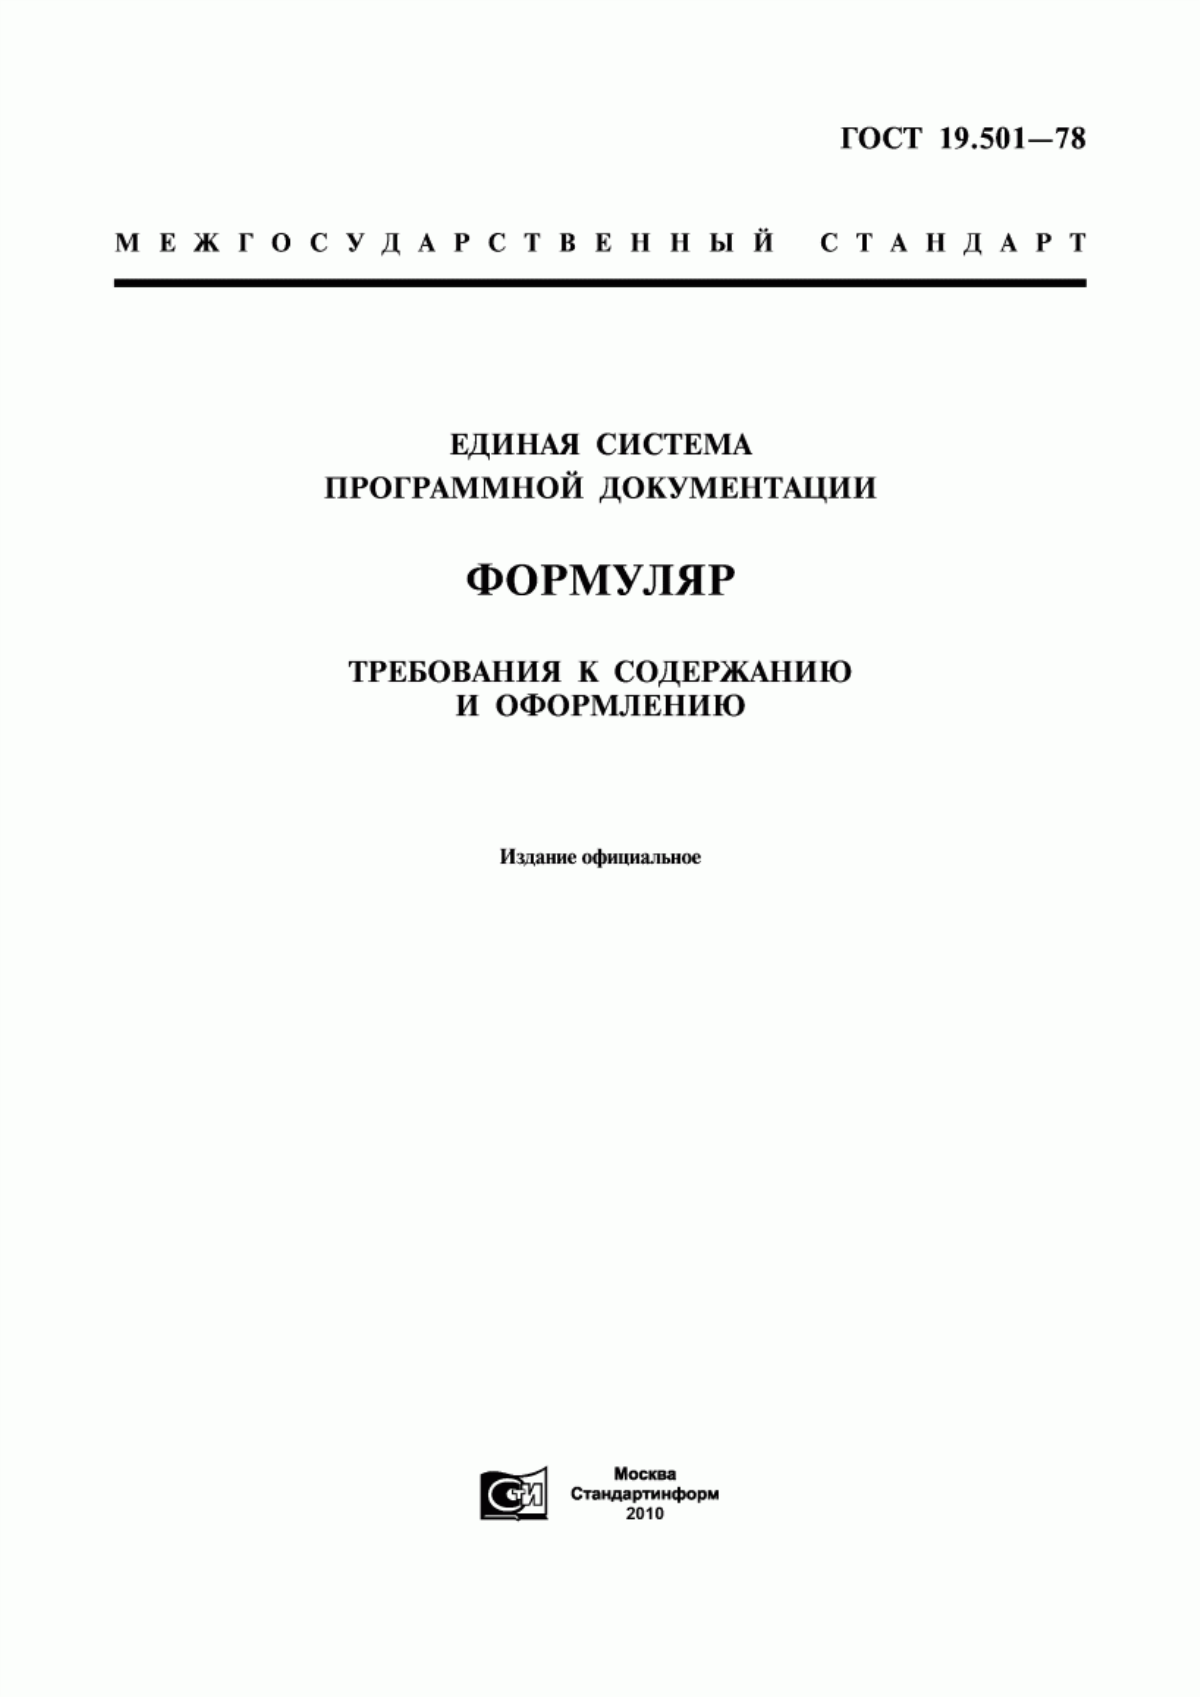 ГОСТ 19.501-78 Единая система программной документации. Формуляр. Требования к содержанию и оформлению